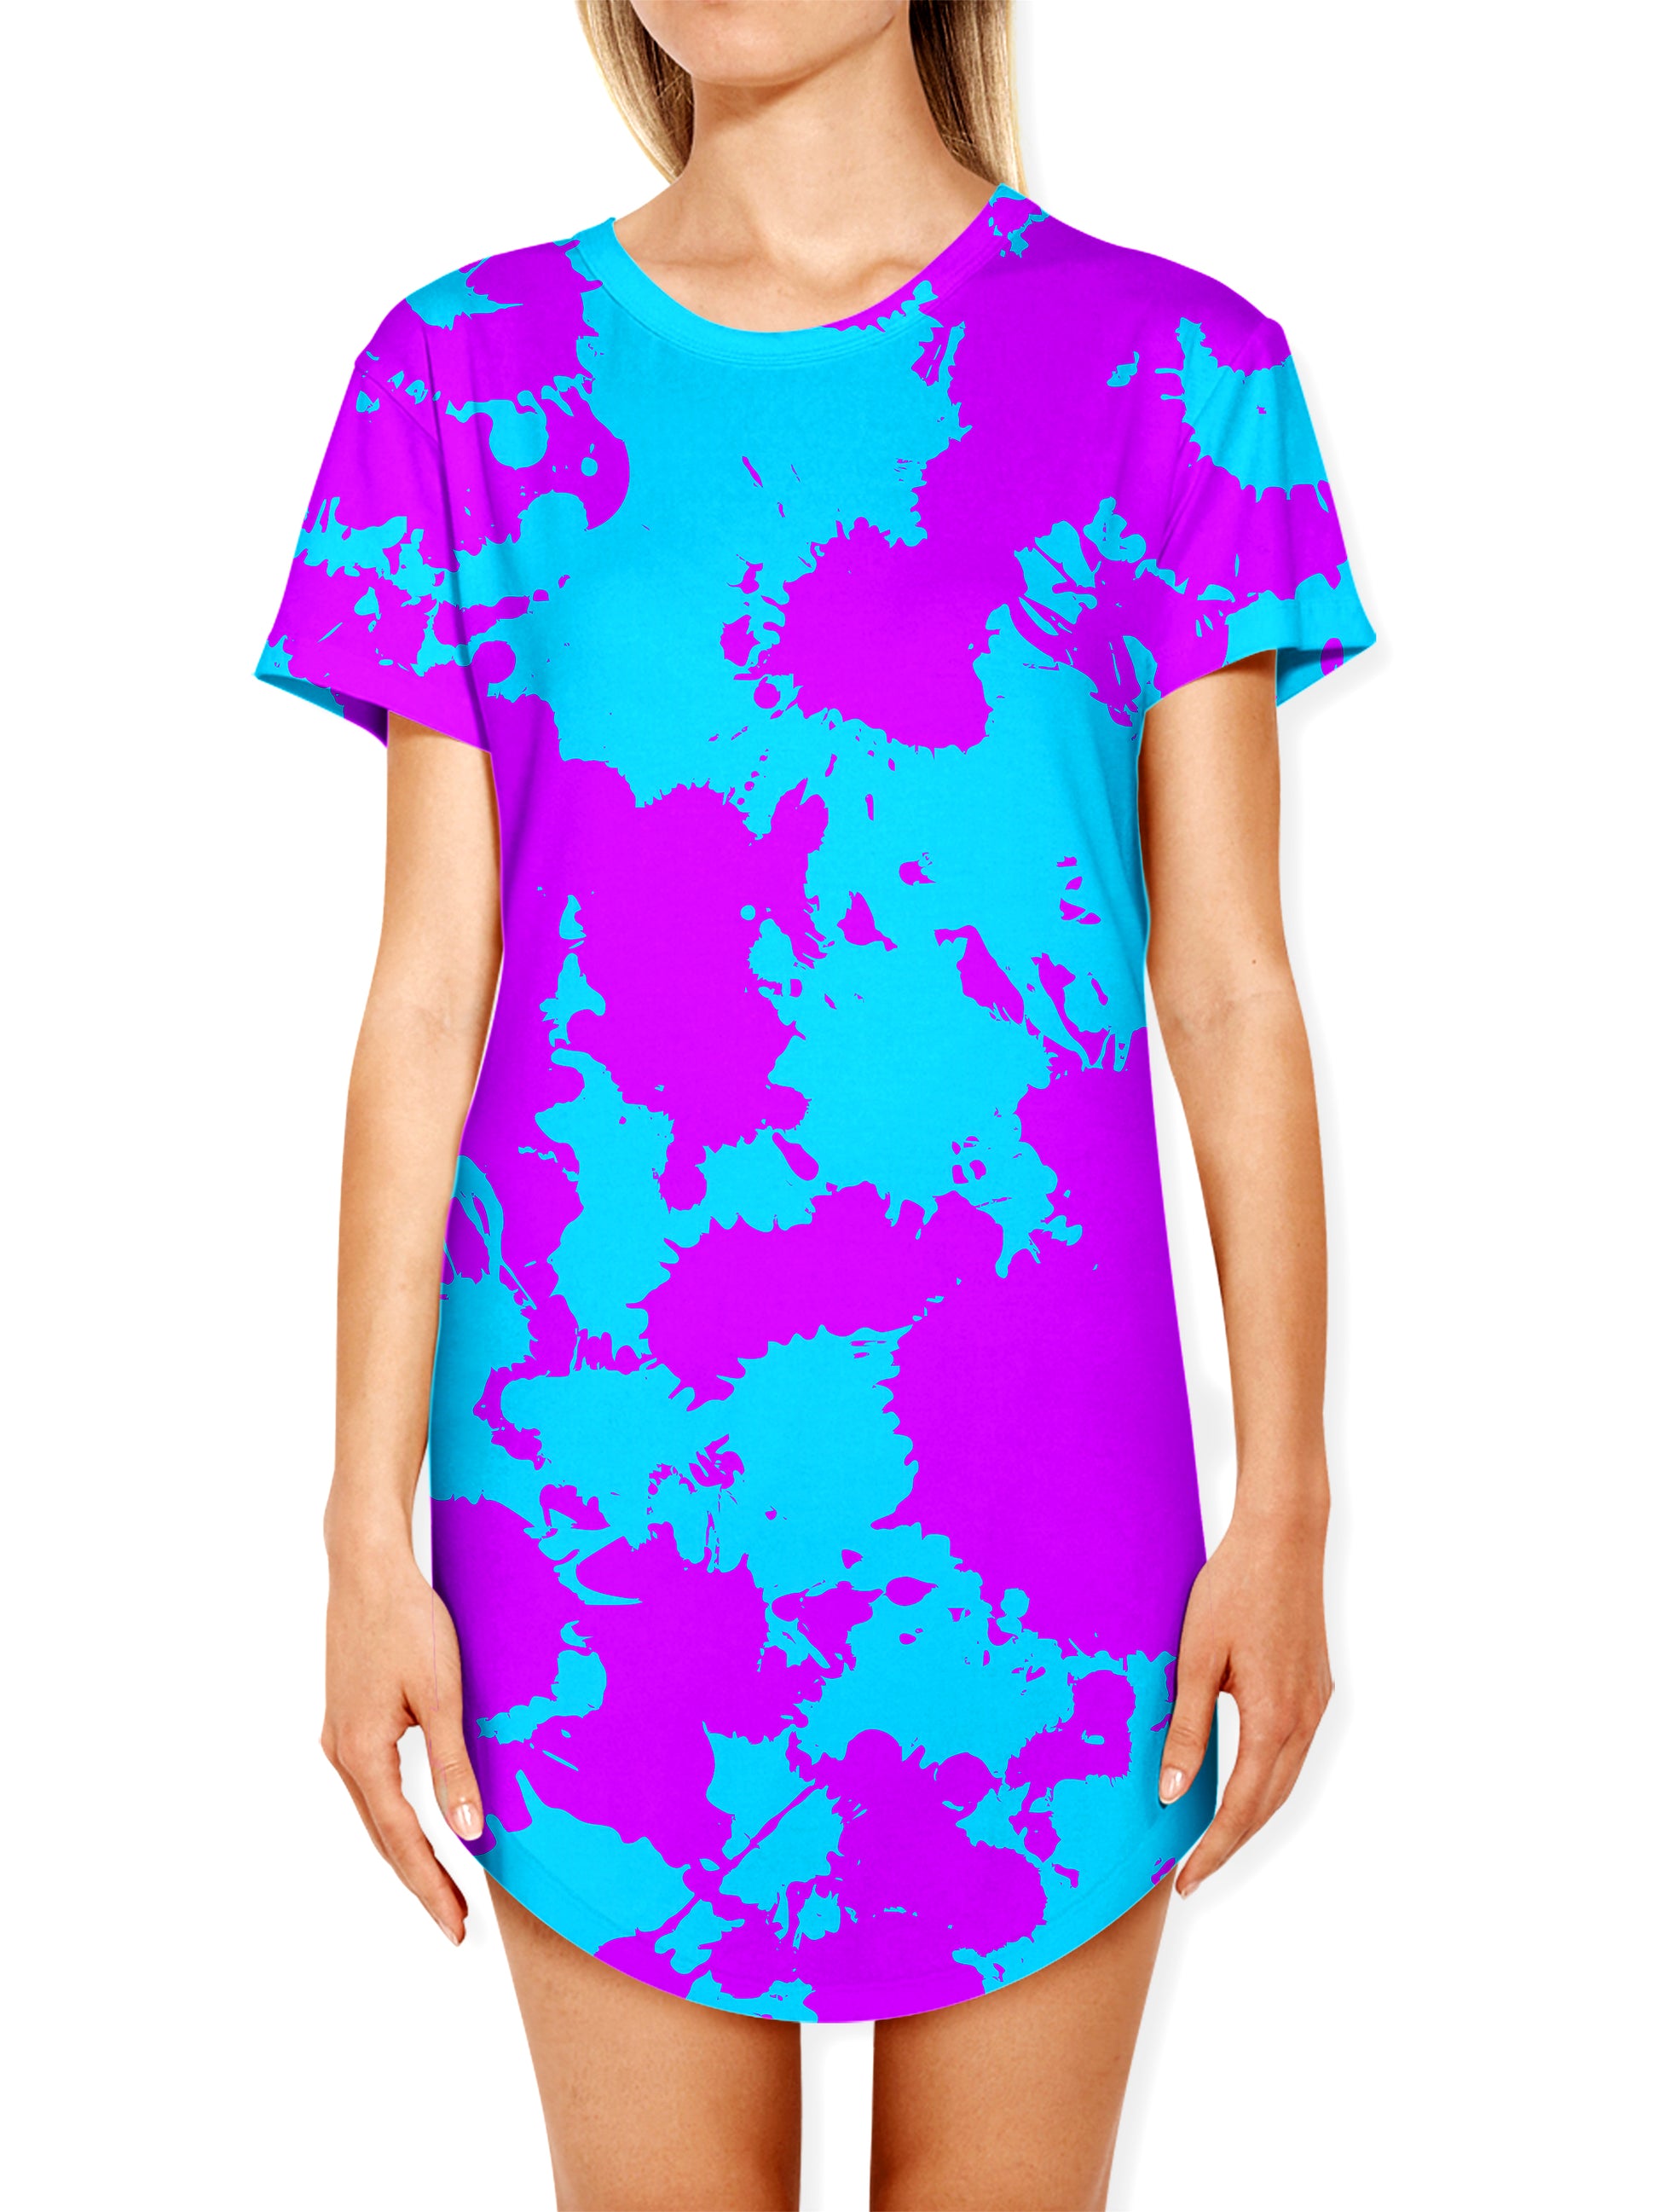 Blue and Purple Paint Splatter Drop Cut T-Shirt, Big Tex Funkadelic, | iEDM